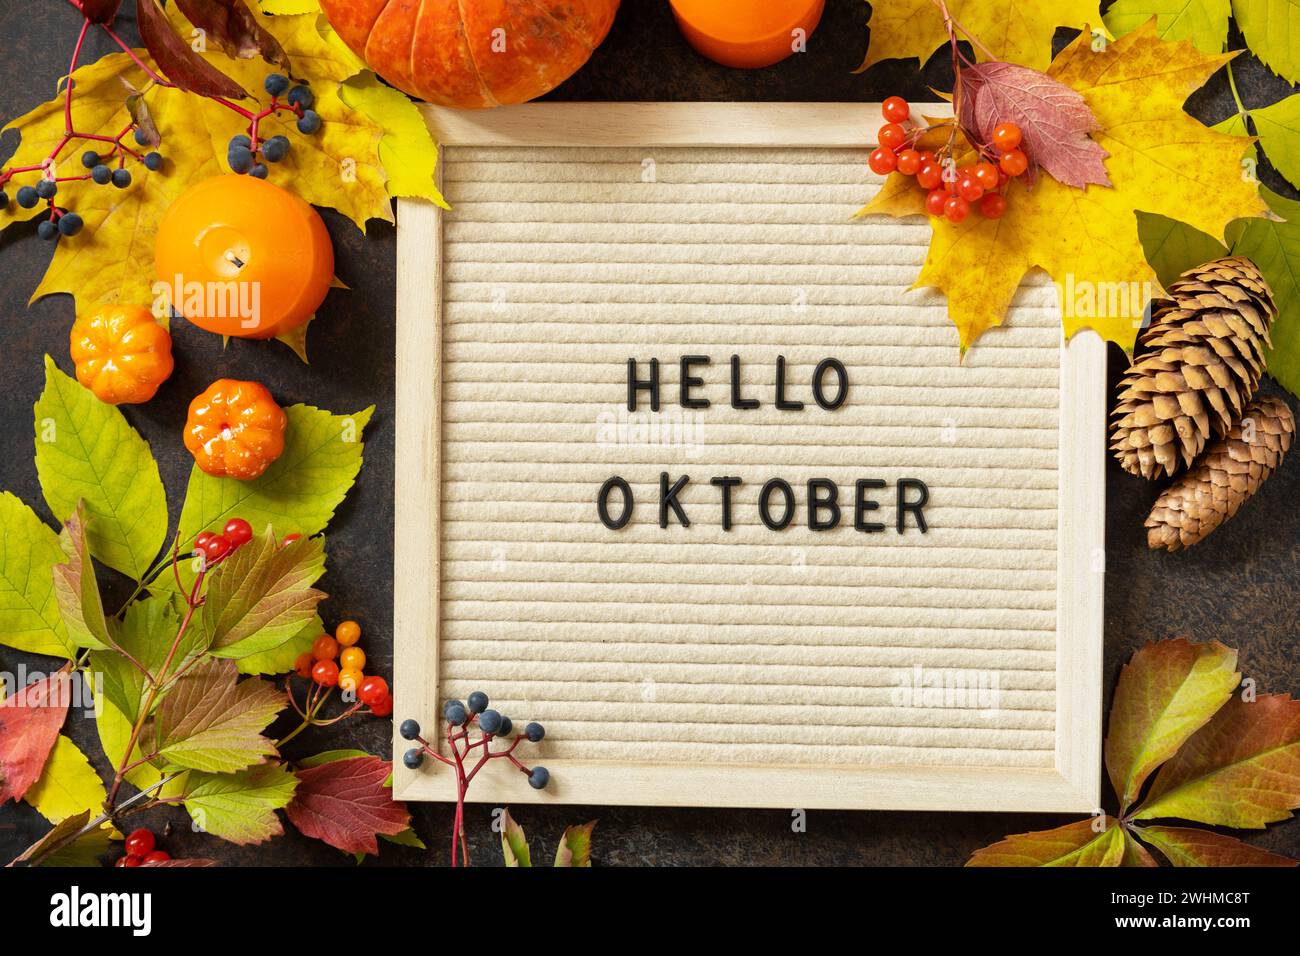 Herbsthintergrund mit Hello-Oktober-Briefen und Herbsttafel, Kürbissen und bunten Blättern. Gemütliche Herbststimmung. Herbstsee Stockfoto